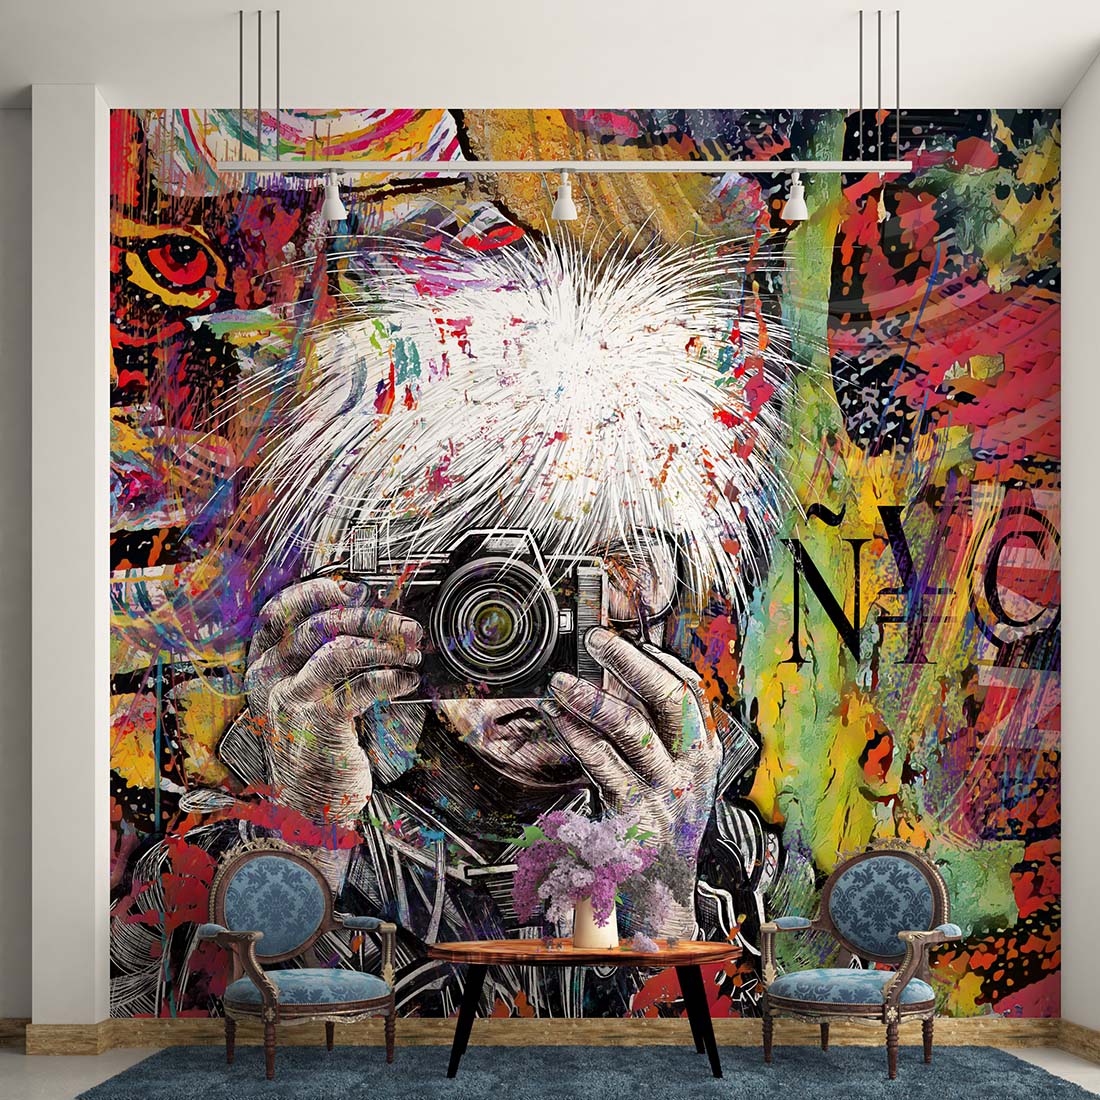 Andy Warhol NYC mixed media art by Doug LaRue wall mural